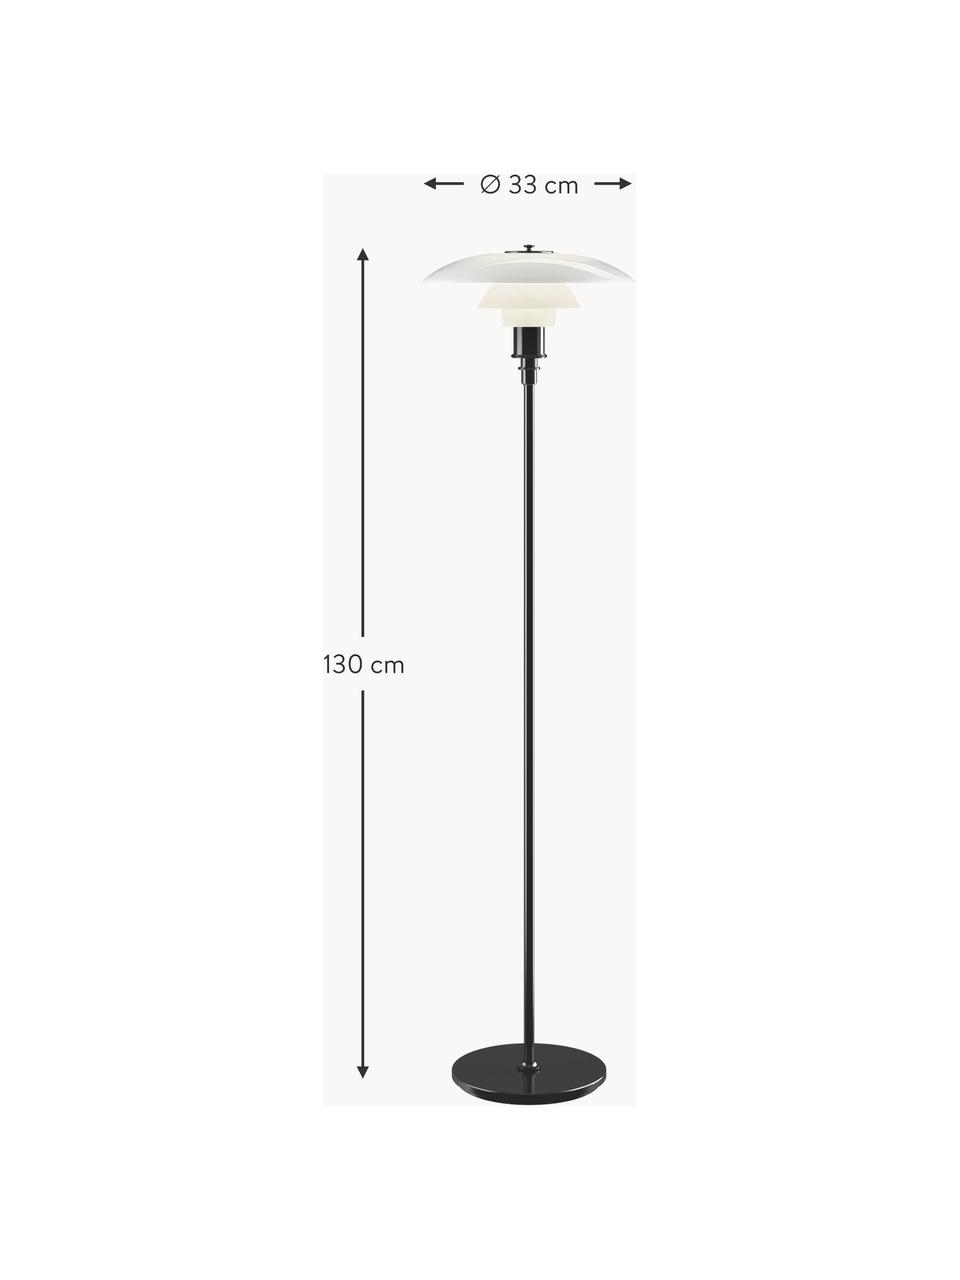 Malá stojací lampa PH 3½-2½, ručně foukaná, Černá, bílá, V 130 cm